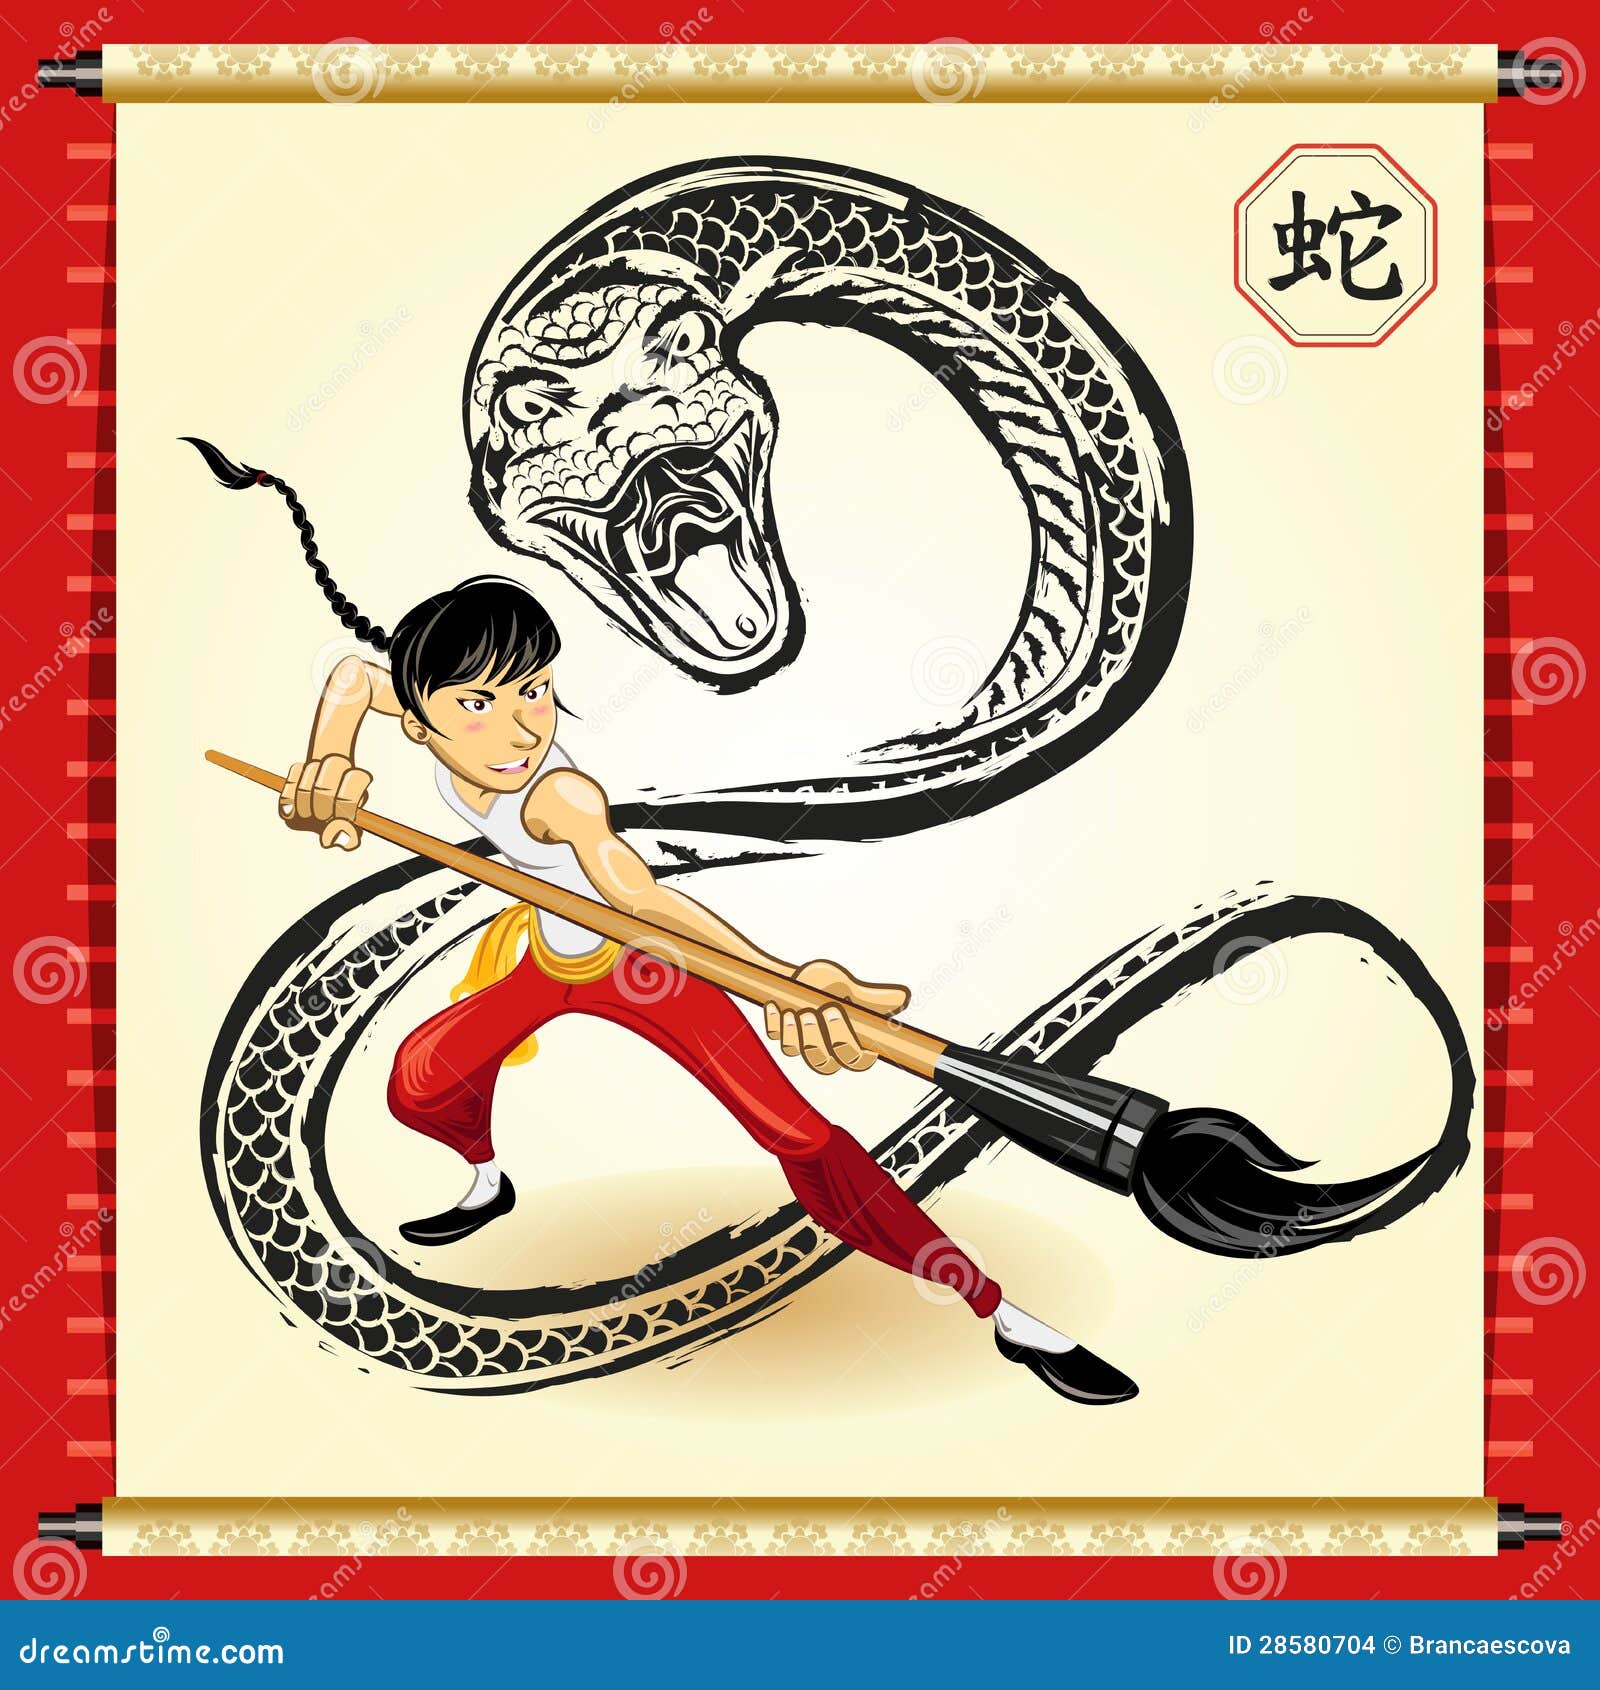 Змея на китайском. Символы китайского нового года змея. Китайка и китайские змейки. Змея из китайского календаря. Китай год змеи новый год.